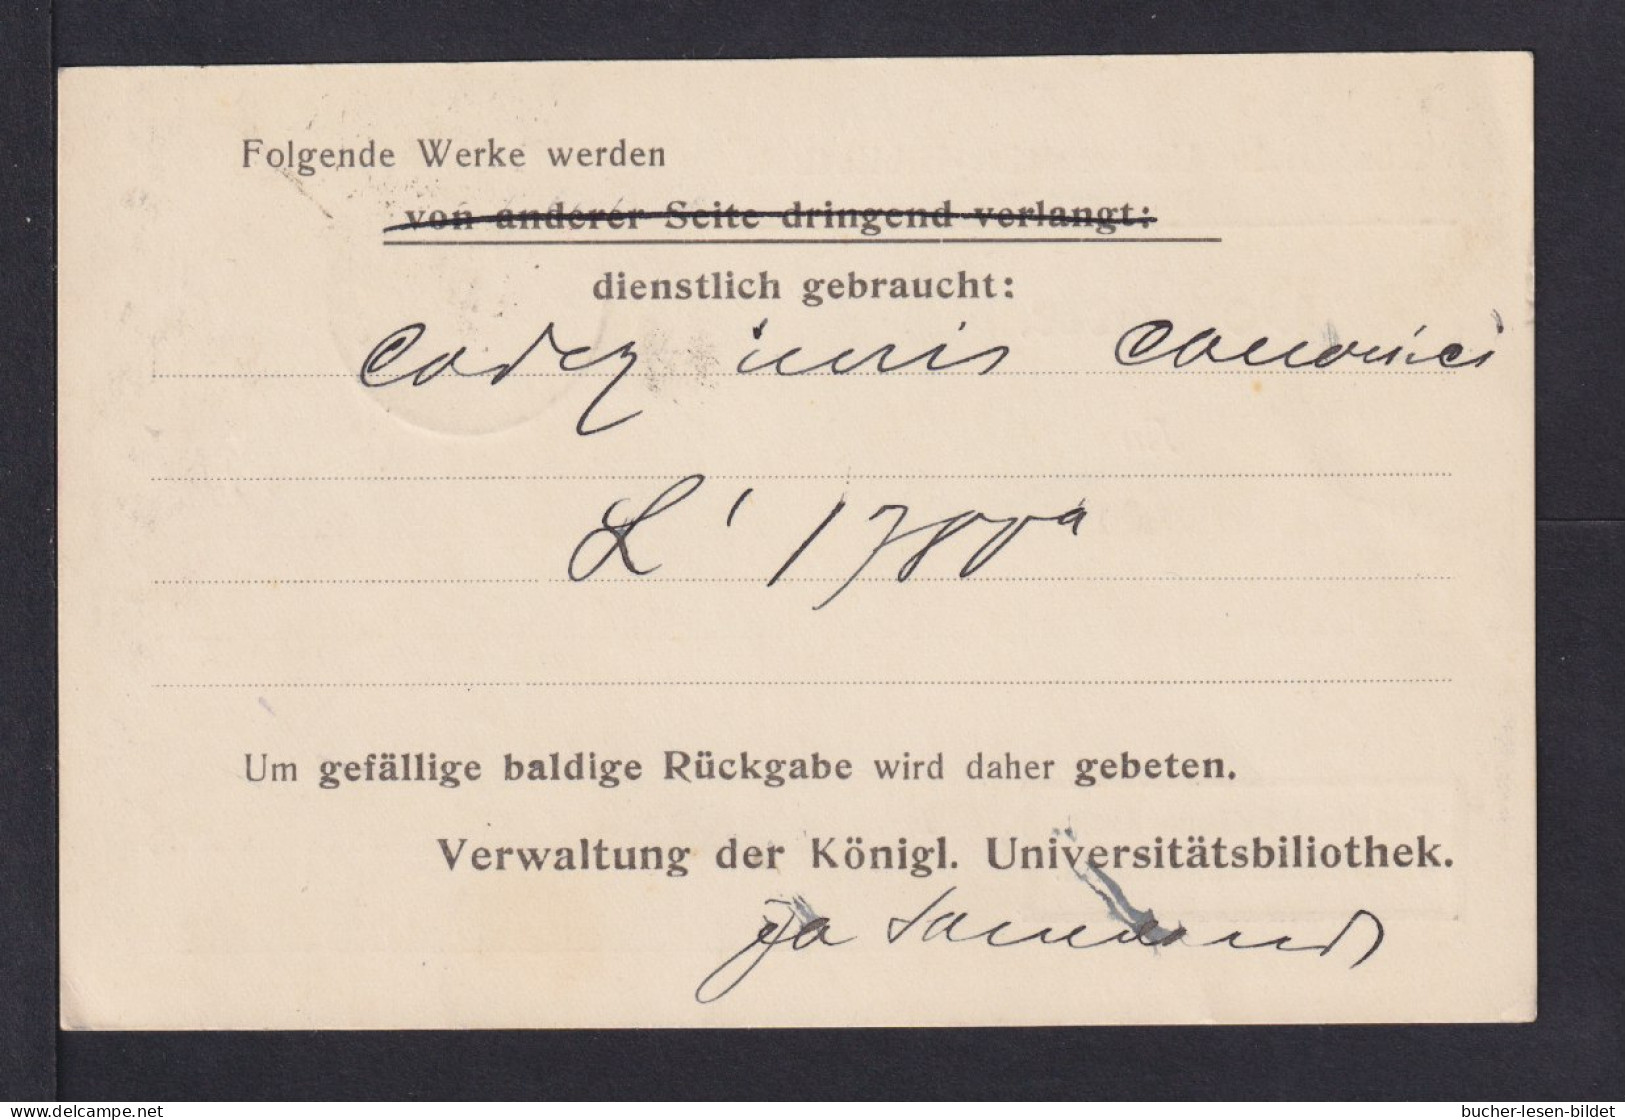 BILDUNG - 1919 - Protofreie Dienstkarte "Universität Münster" - Gebraucht - Naturaleza